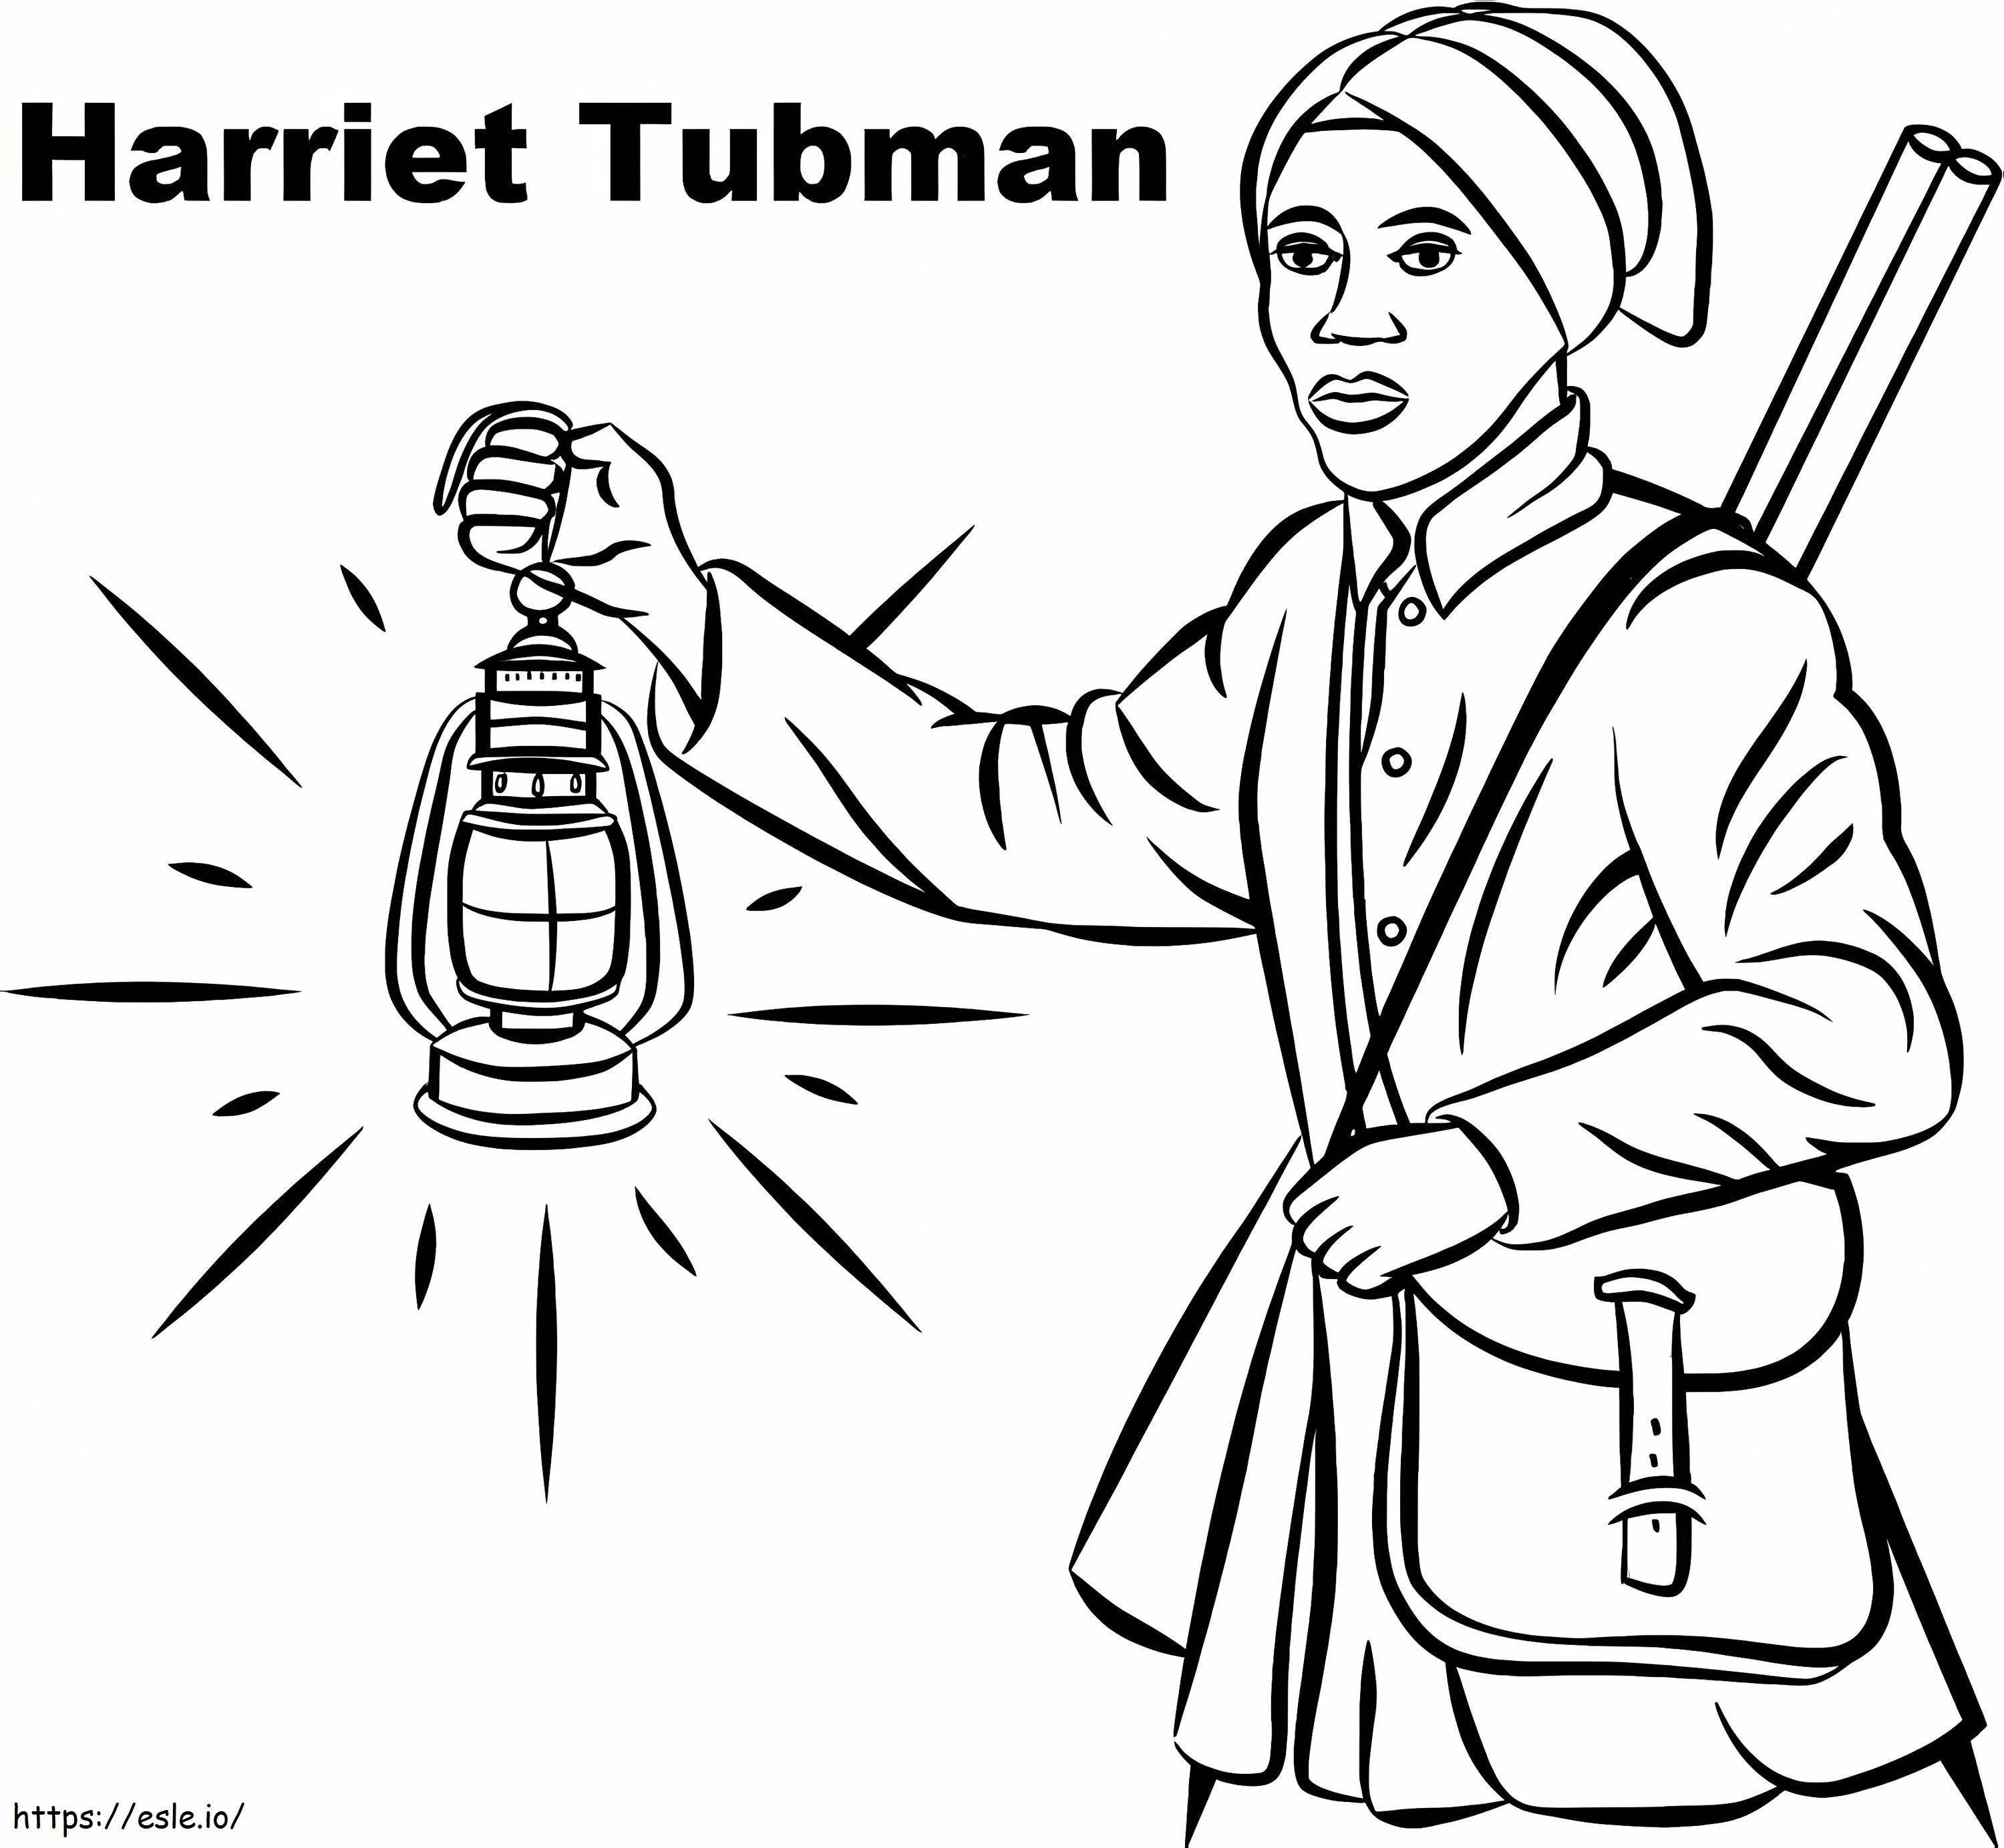 Harriet Tubman6 kleurplaat kleurplaat